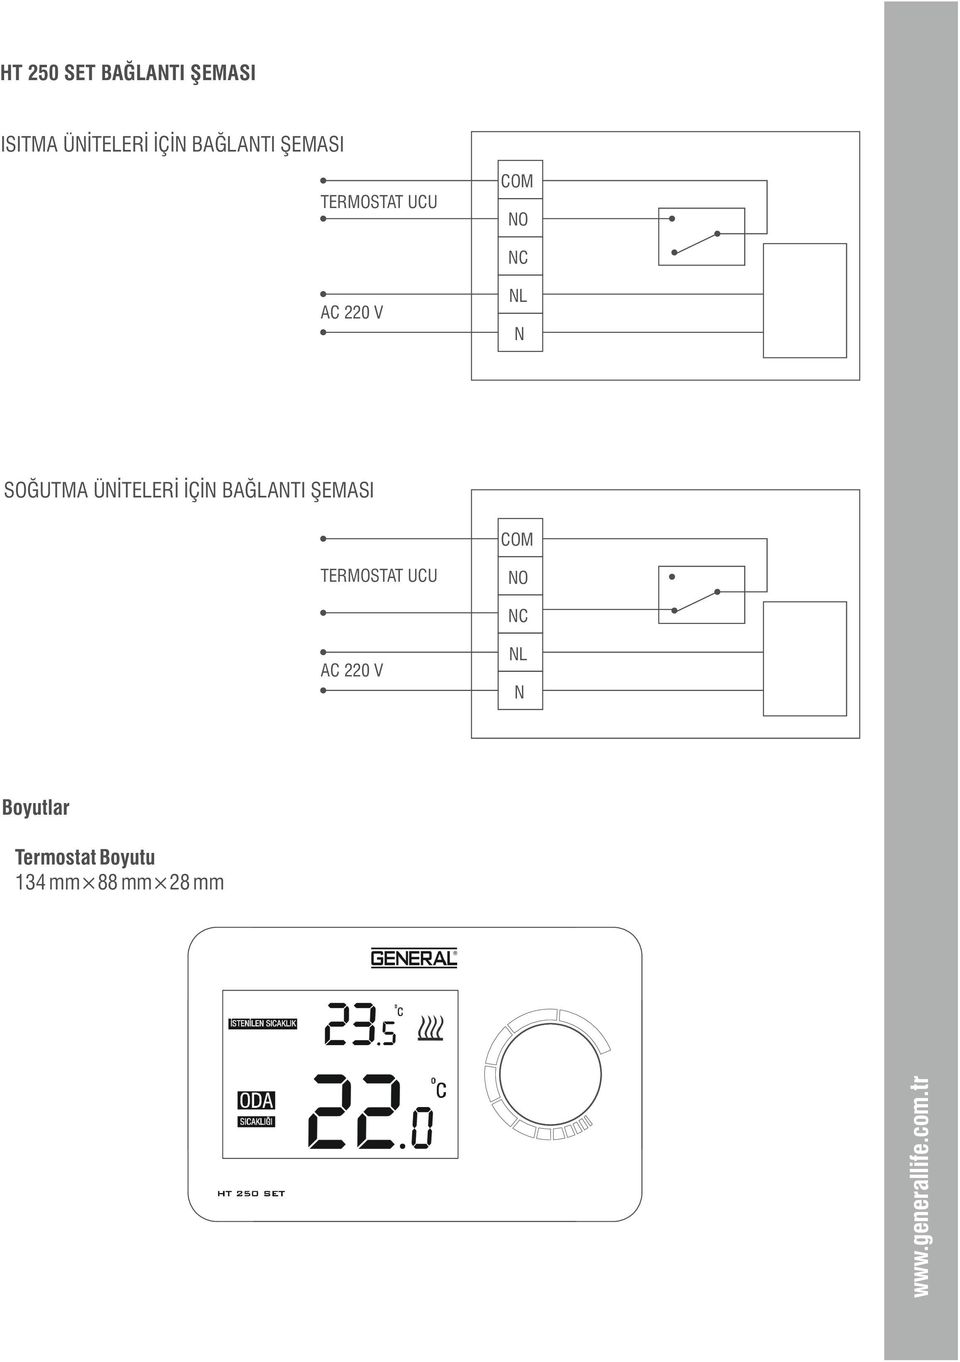 HT 250 SET. LCD li Kablosuz Oda Termostatı Kontrolleri. Kullanım - PDF  Ücretsiz indirin